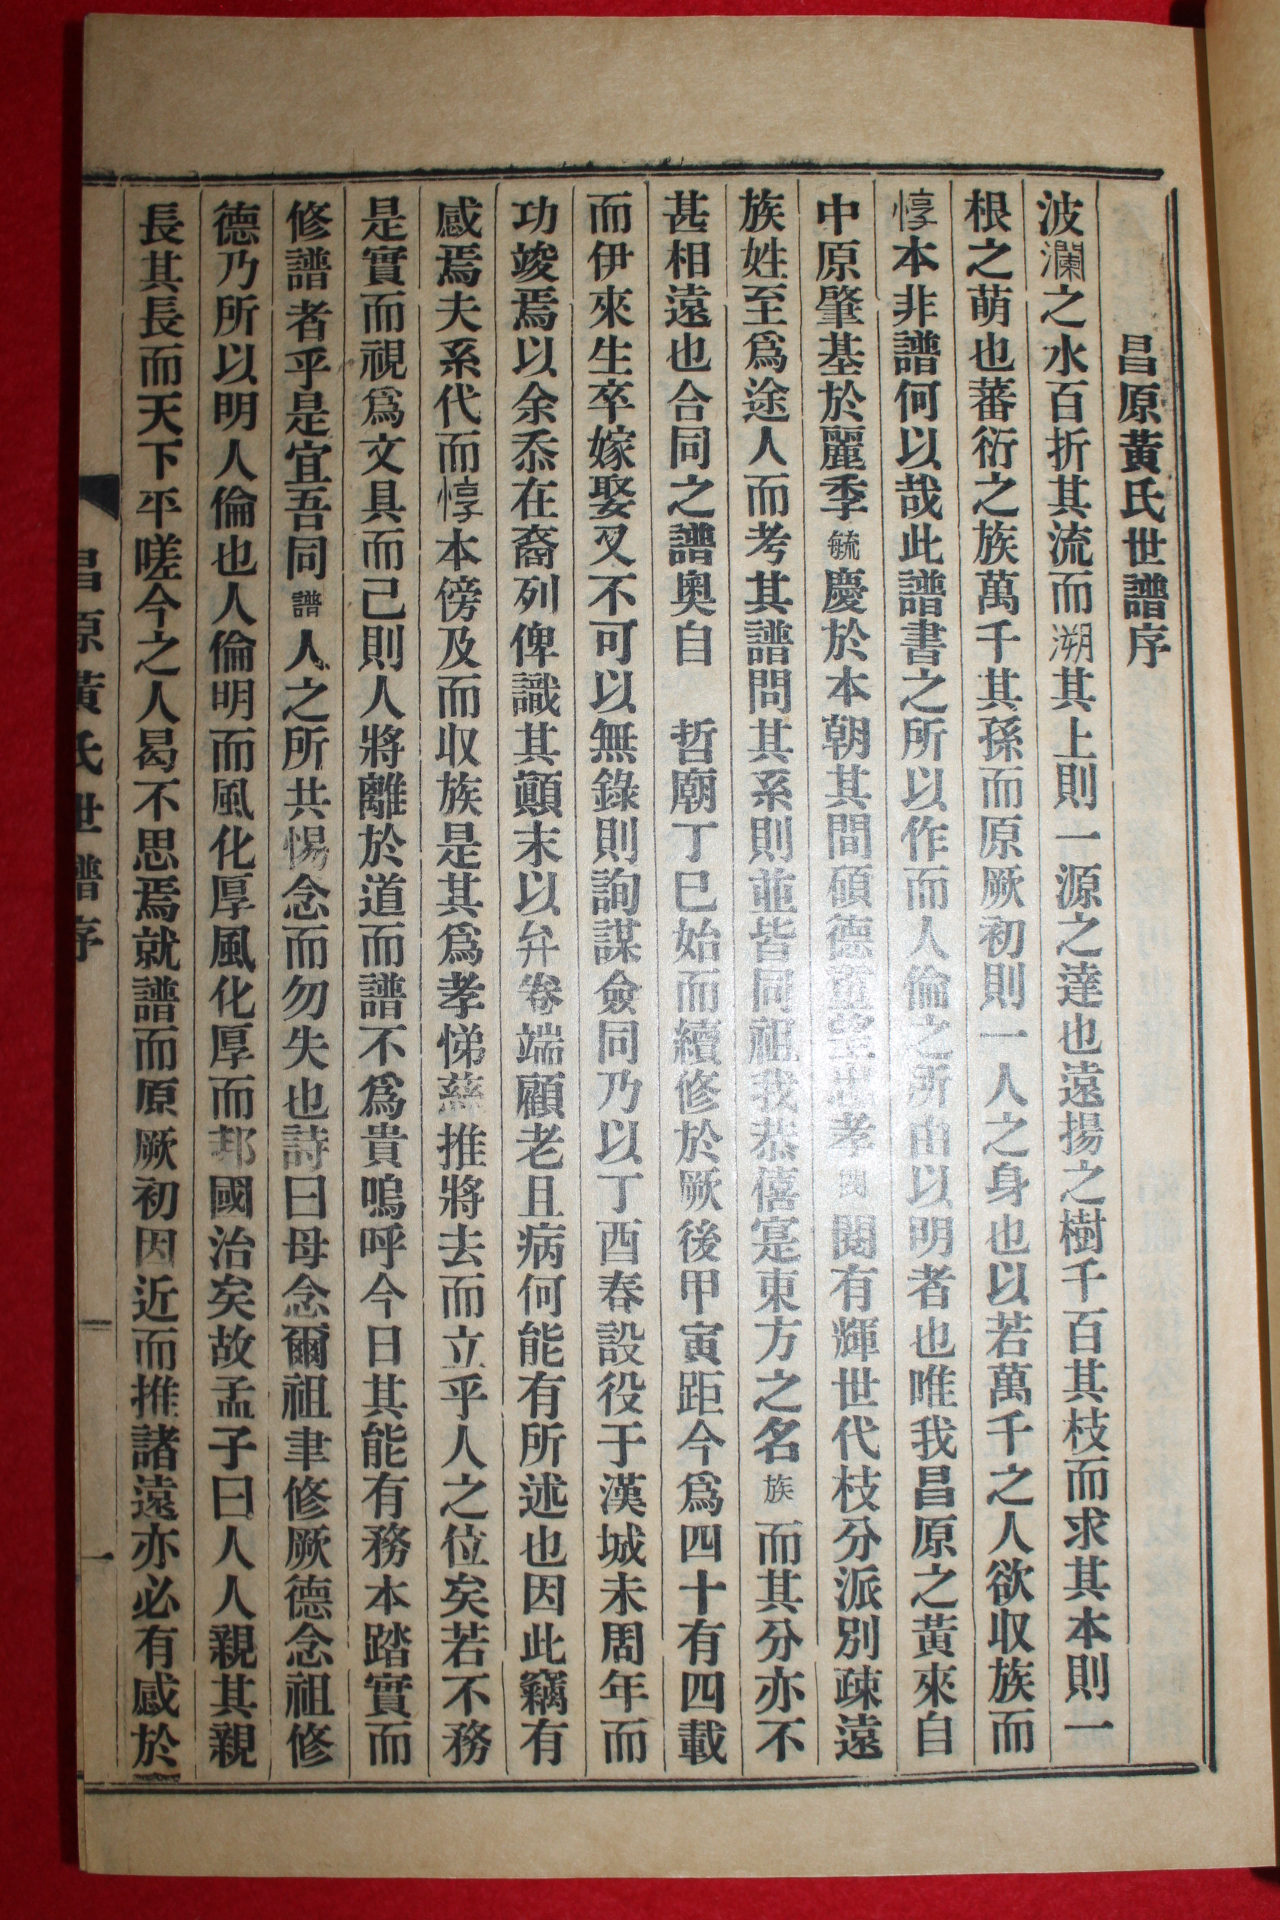 1957년 신연활자본 창원황씨세보(昌原黃氏世譜) 10책완질